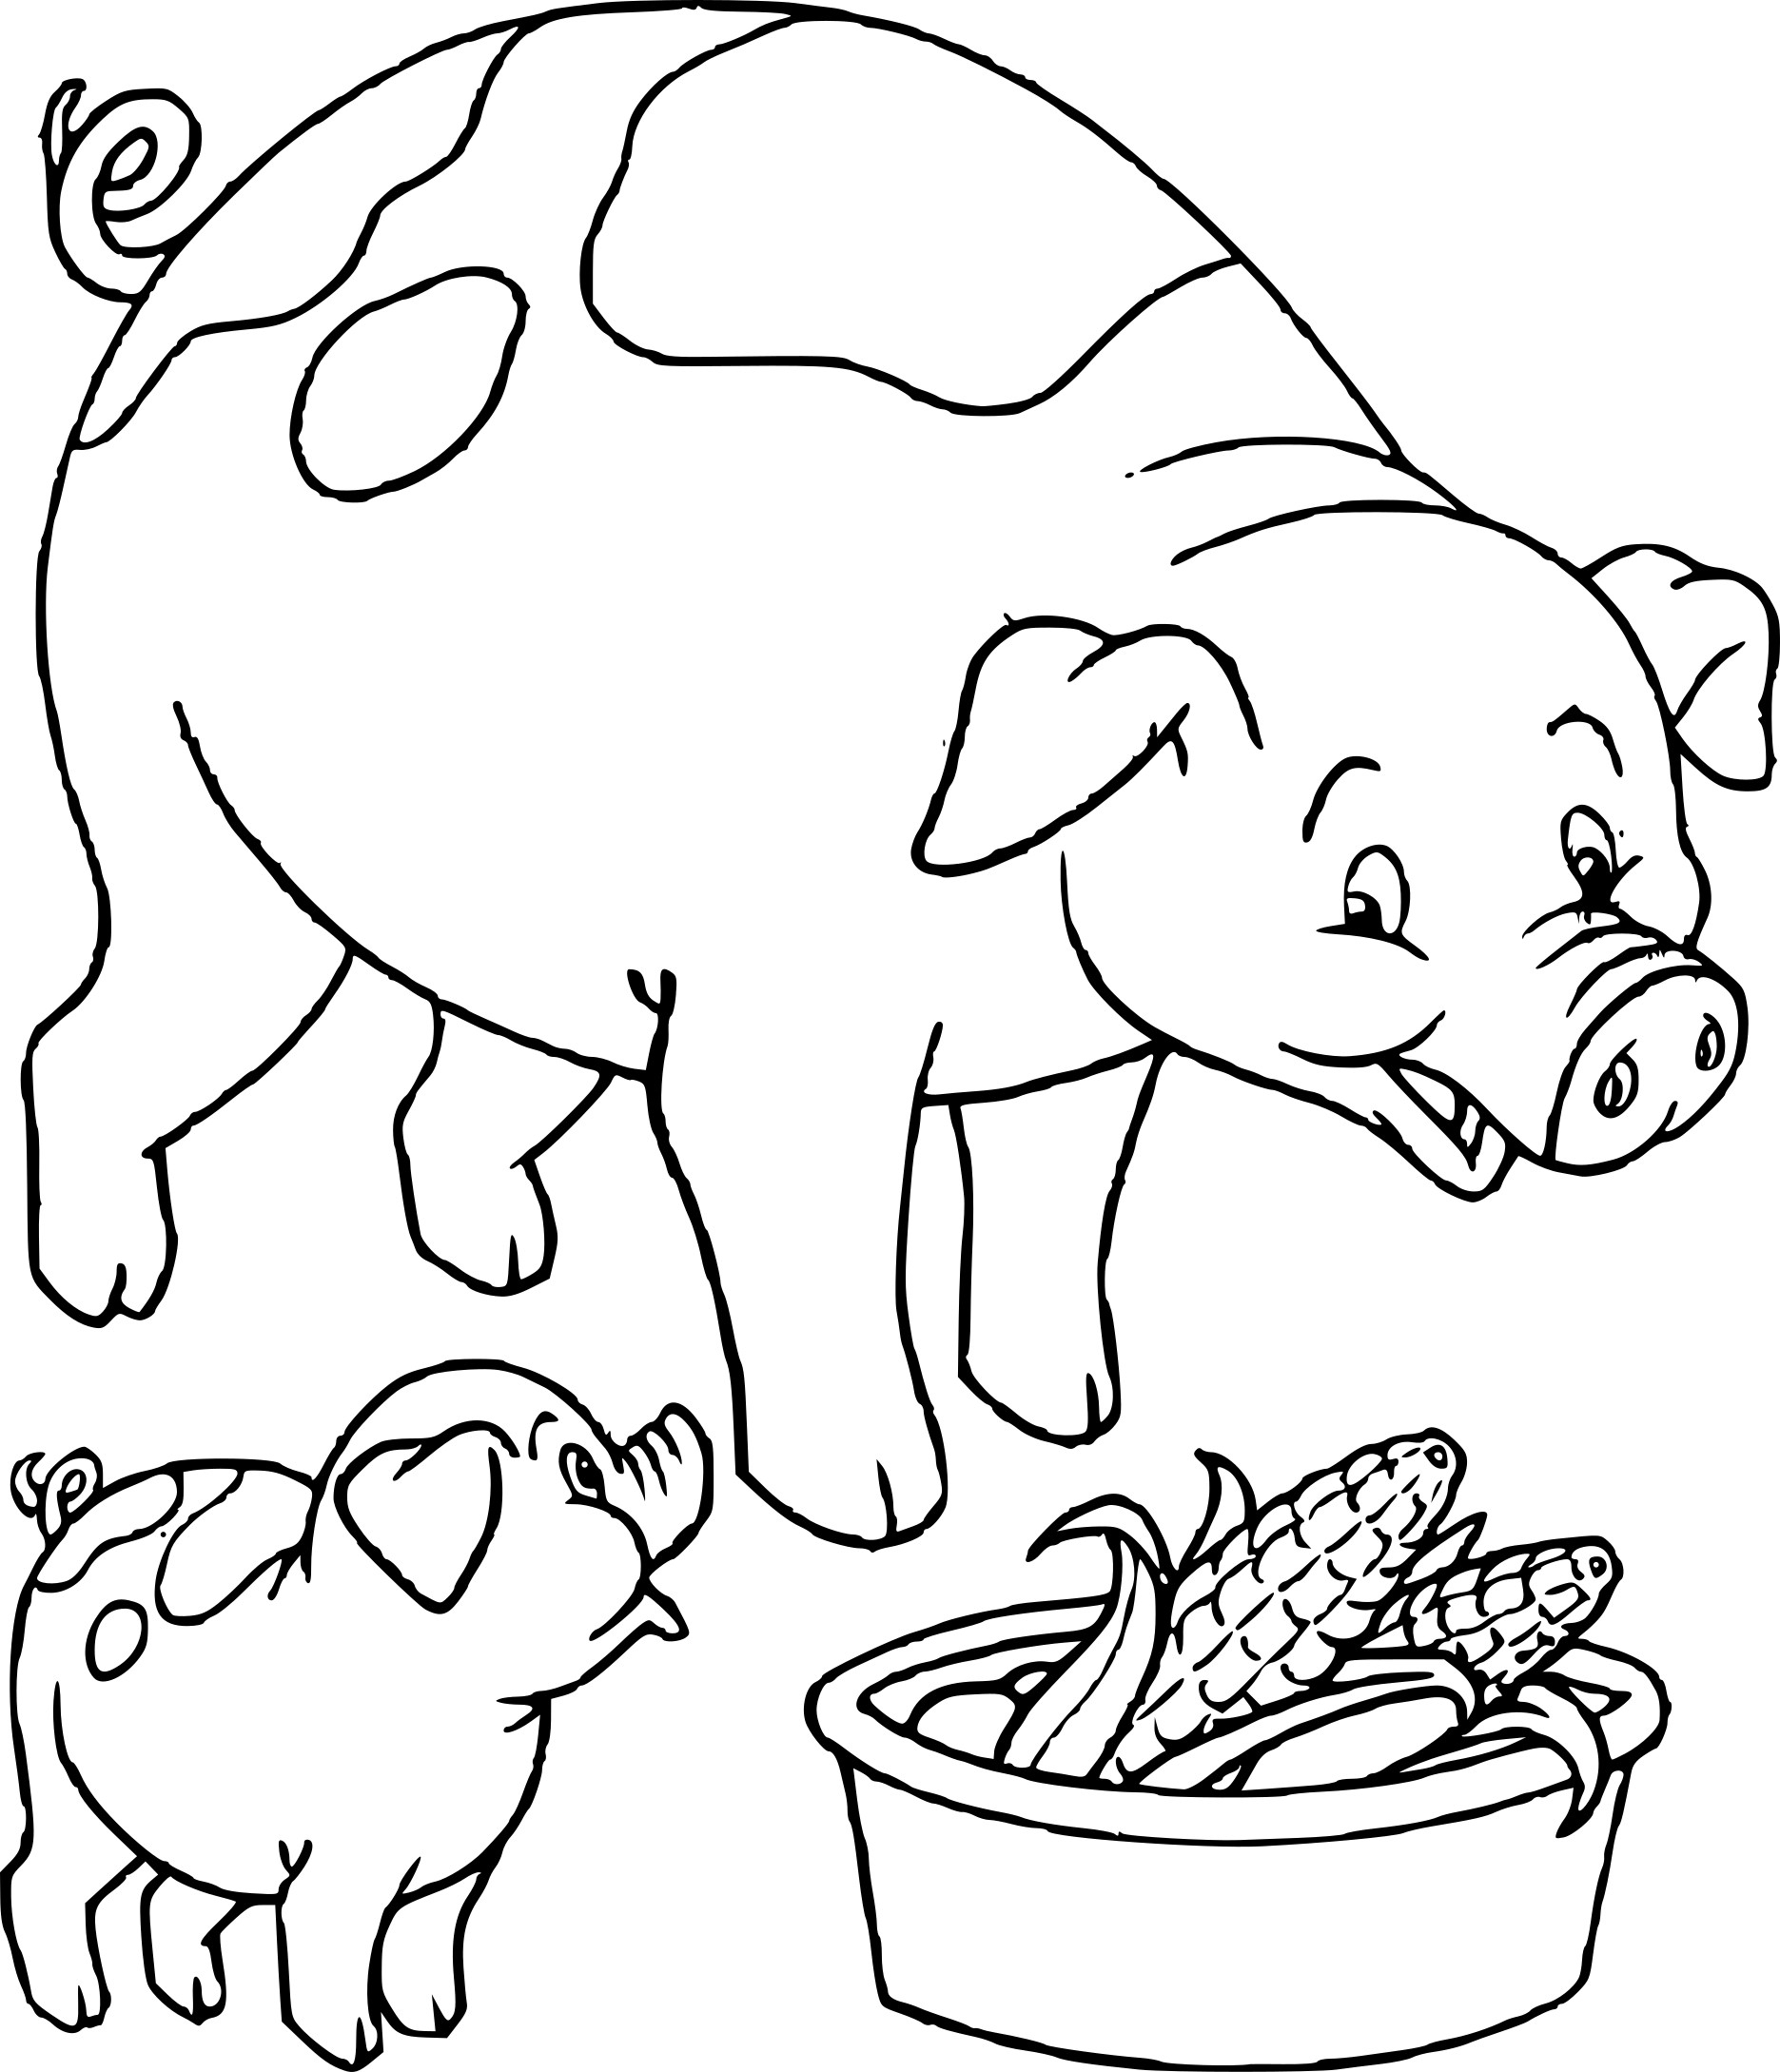 Coloriage Cochon Et Son Petit À Imprimer Sur Coloriages destiné Coloriage Cochon D Inde À Imprimer 